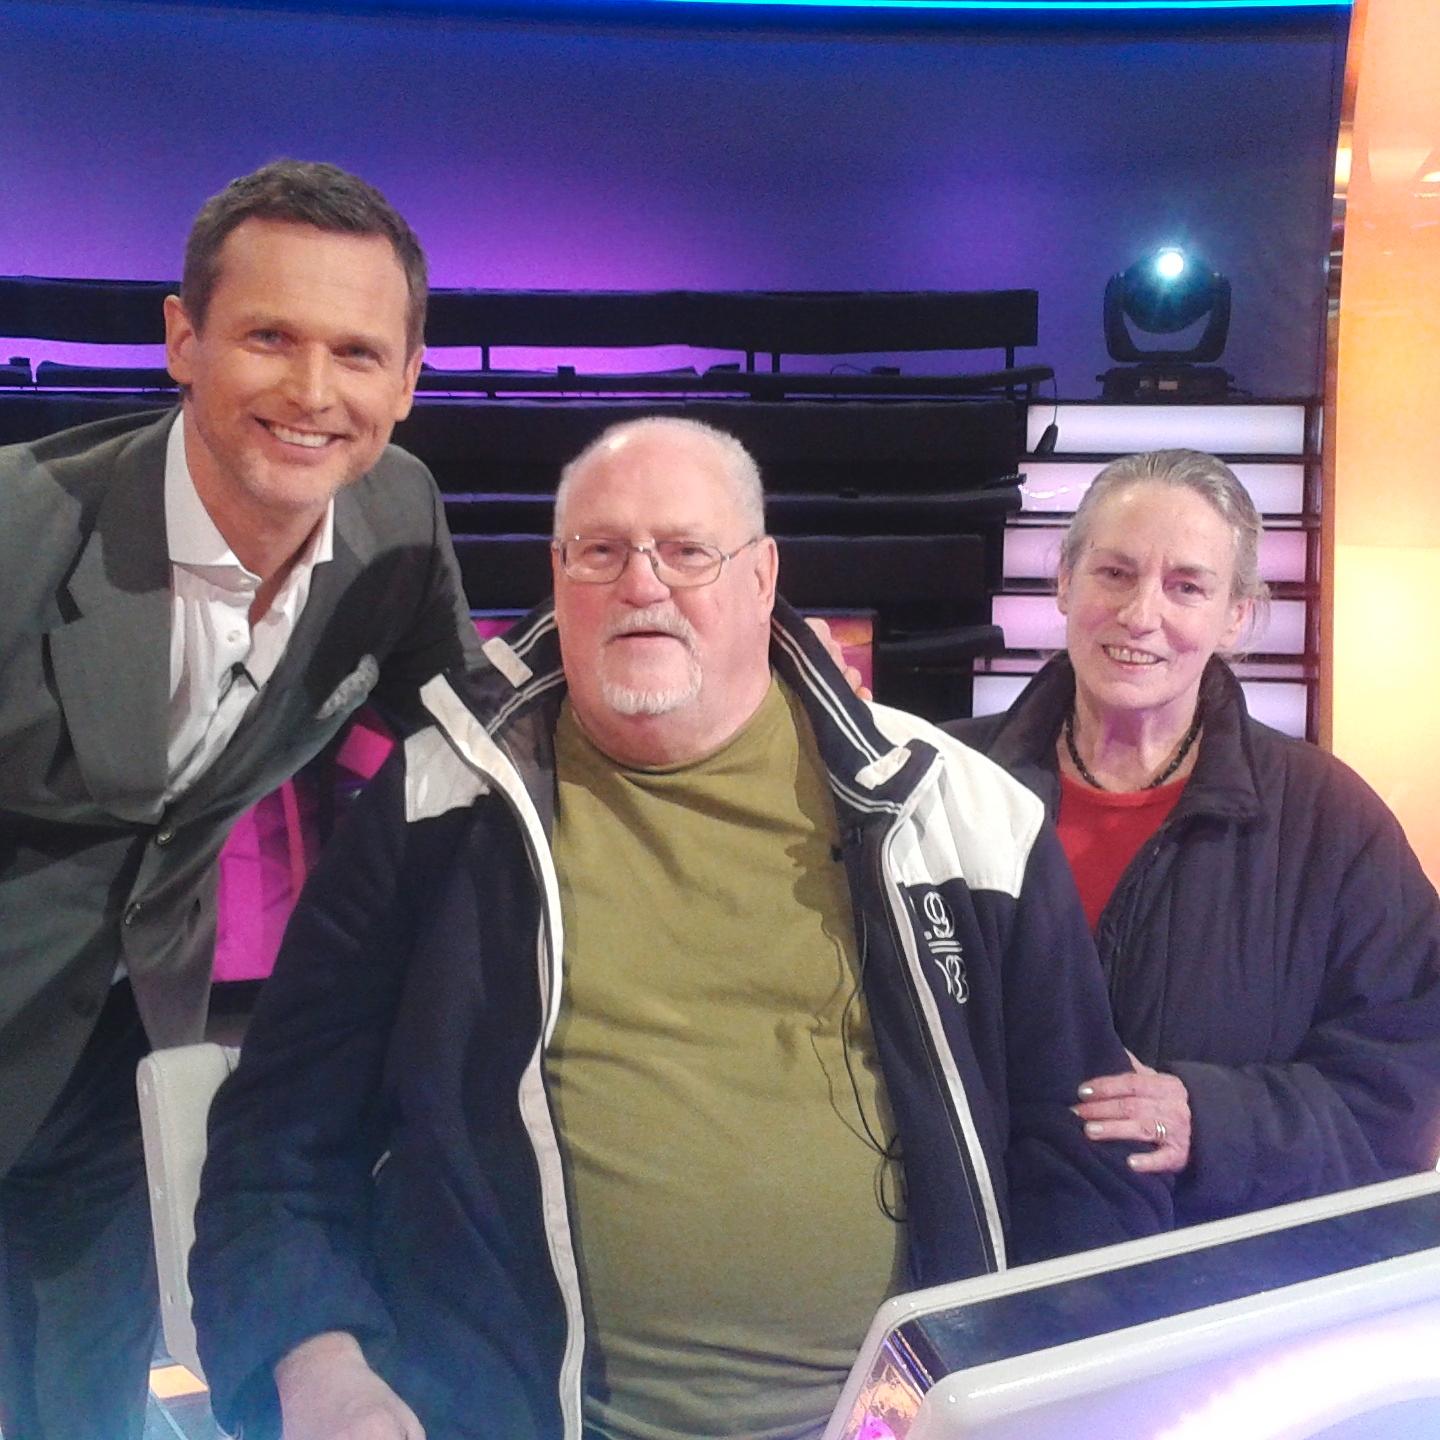 Alfred Steinzer vann 150000 kr i tv-studion på ”Postkodmiljonären”. Här tillsammans med programledaren Rickard Sjöberg och sin fru.